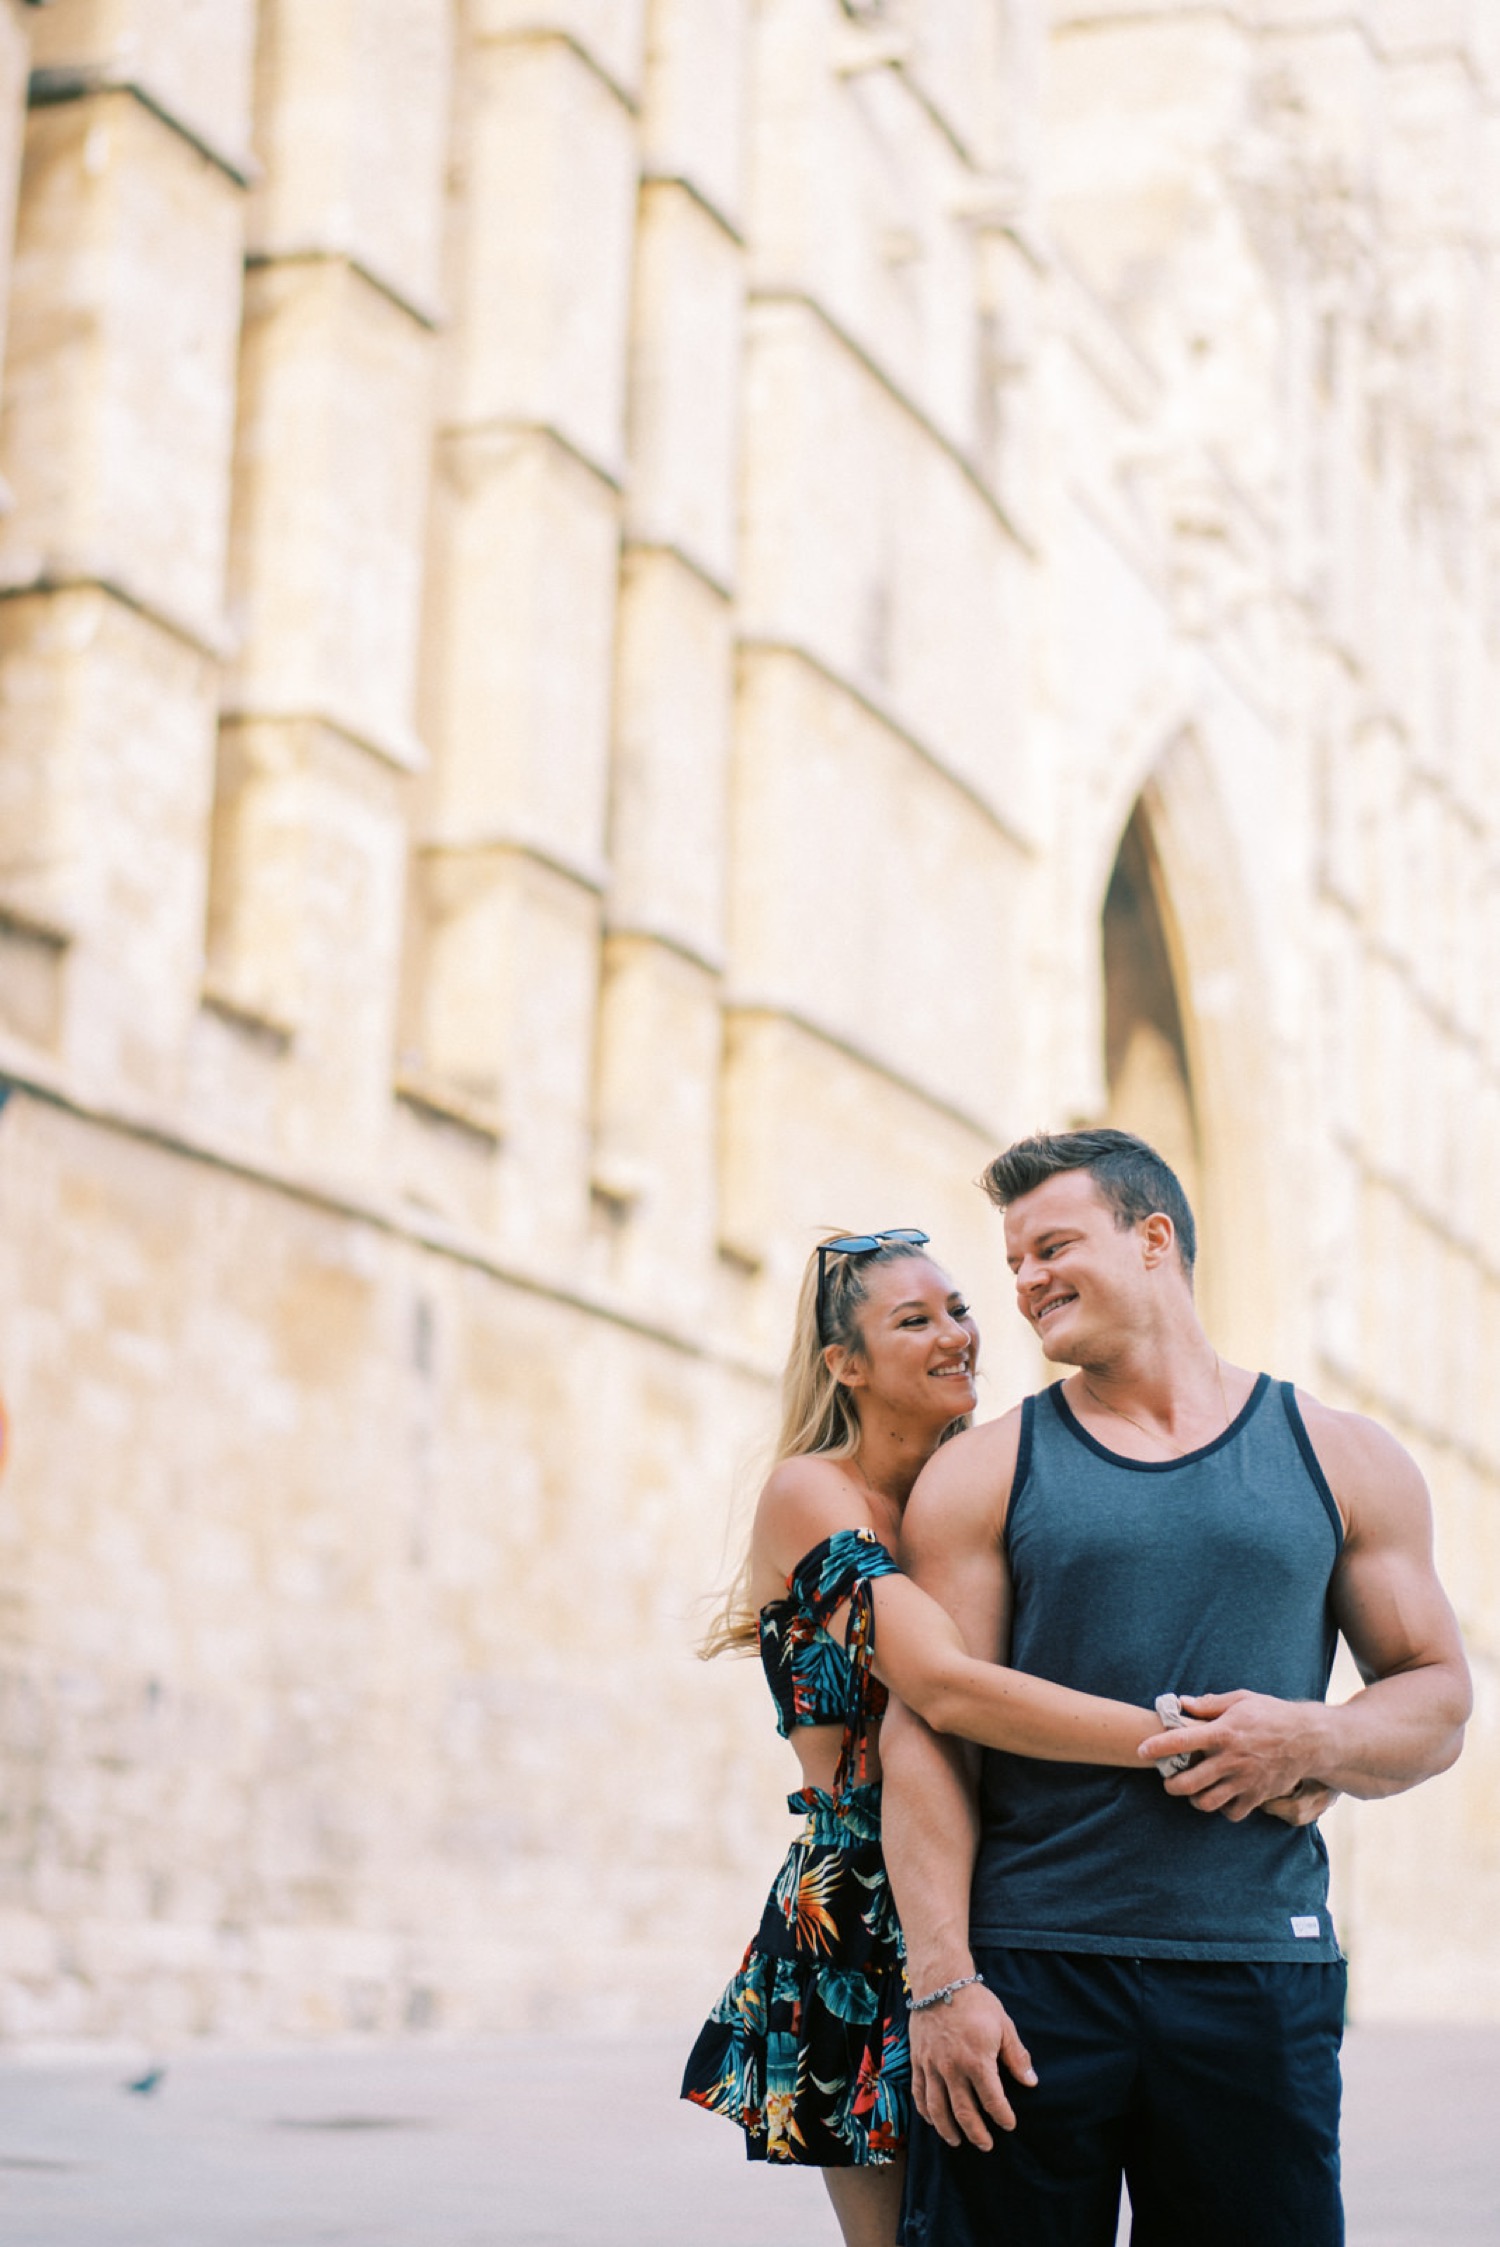 Couples photoshoot in Old Town Palma de Mallorca 1